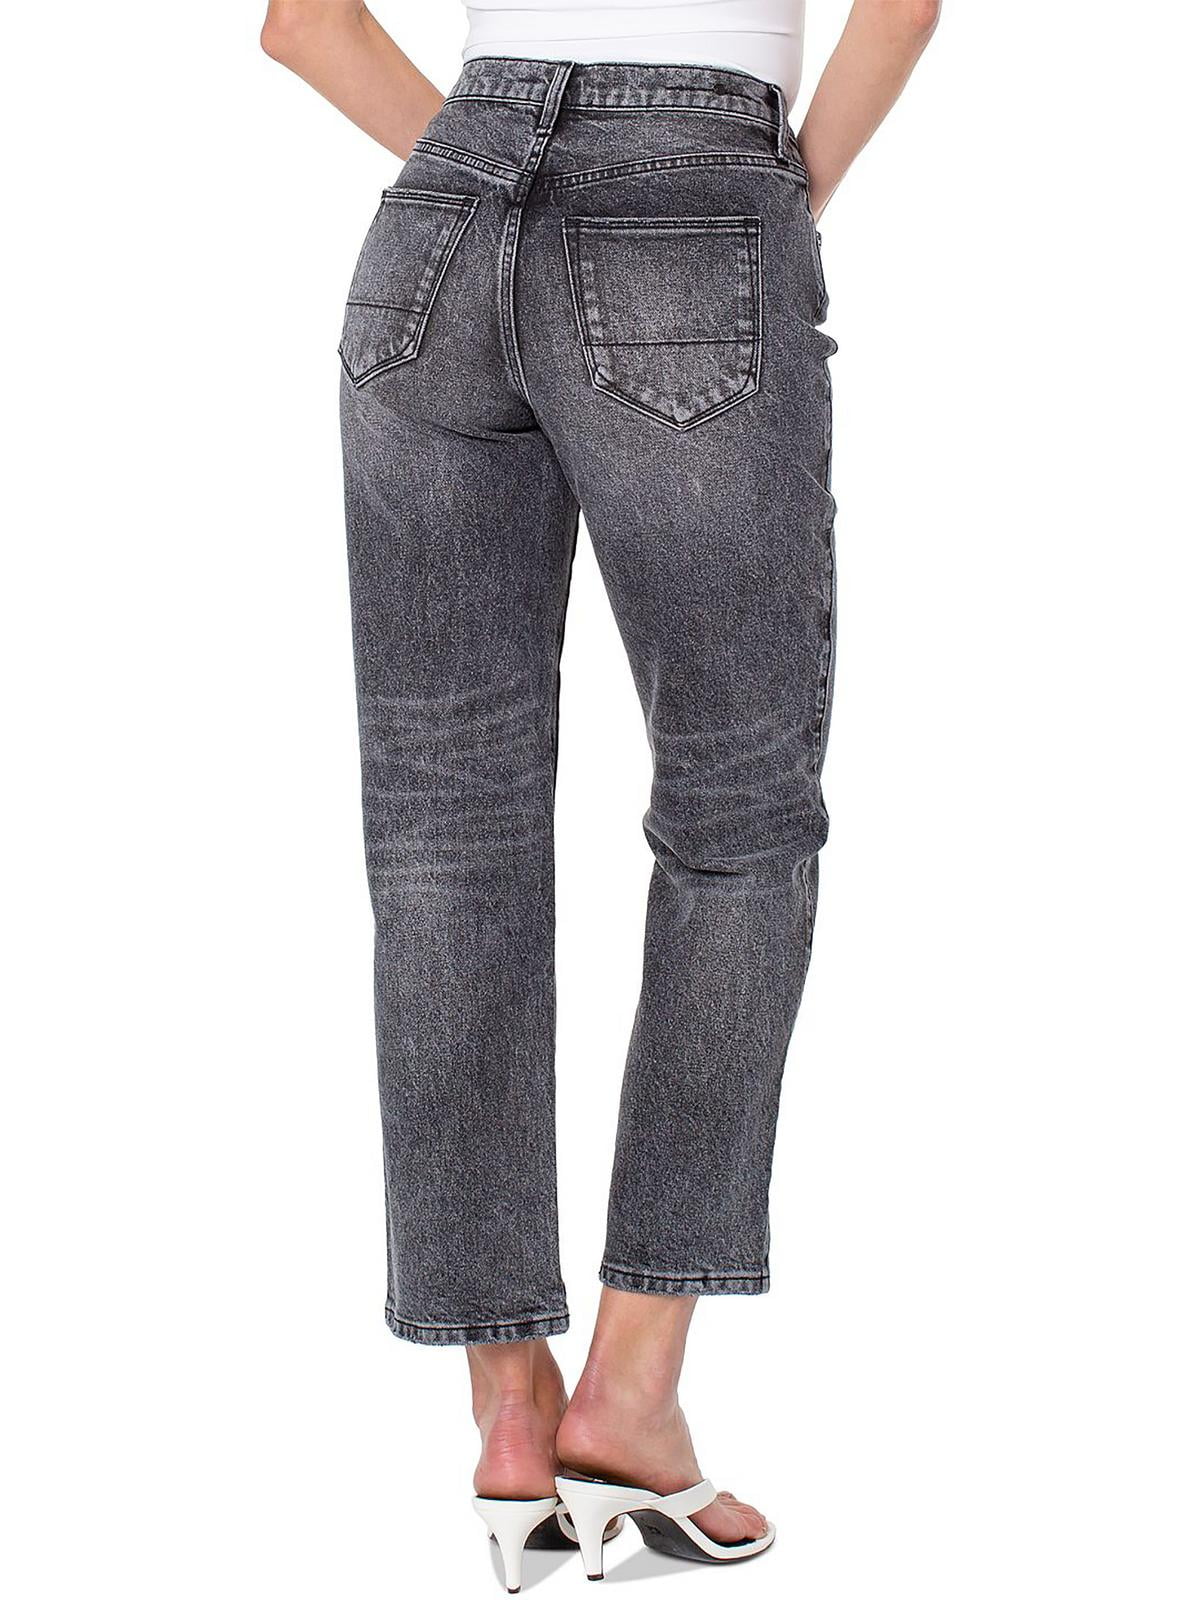 Faded Black Jeans Women | ShopStyle